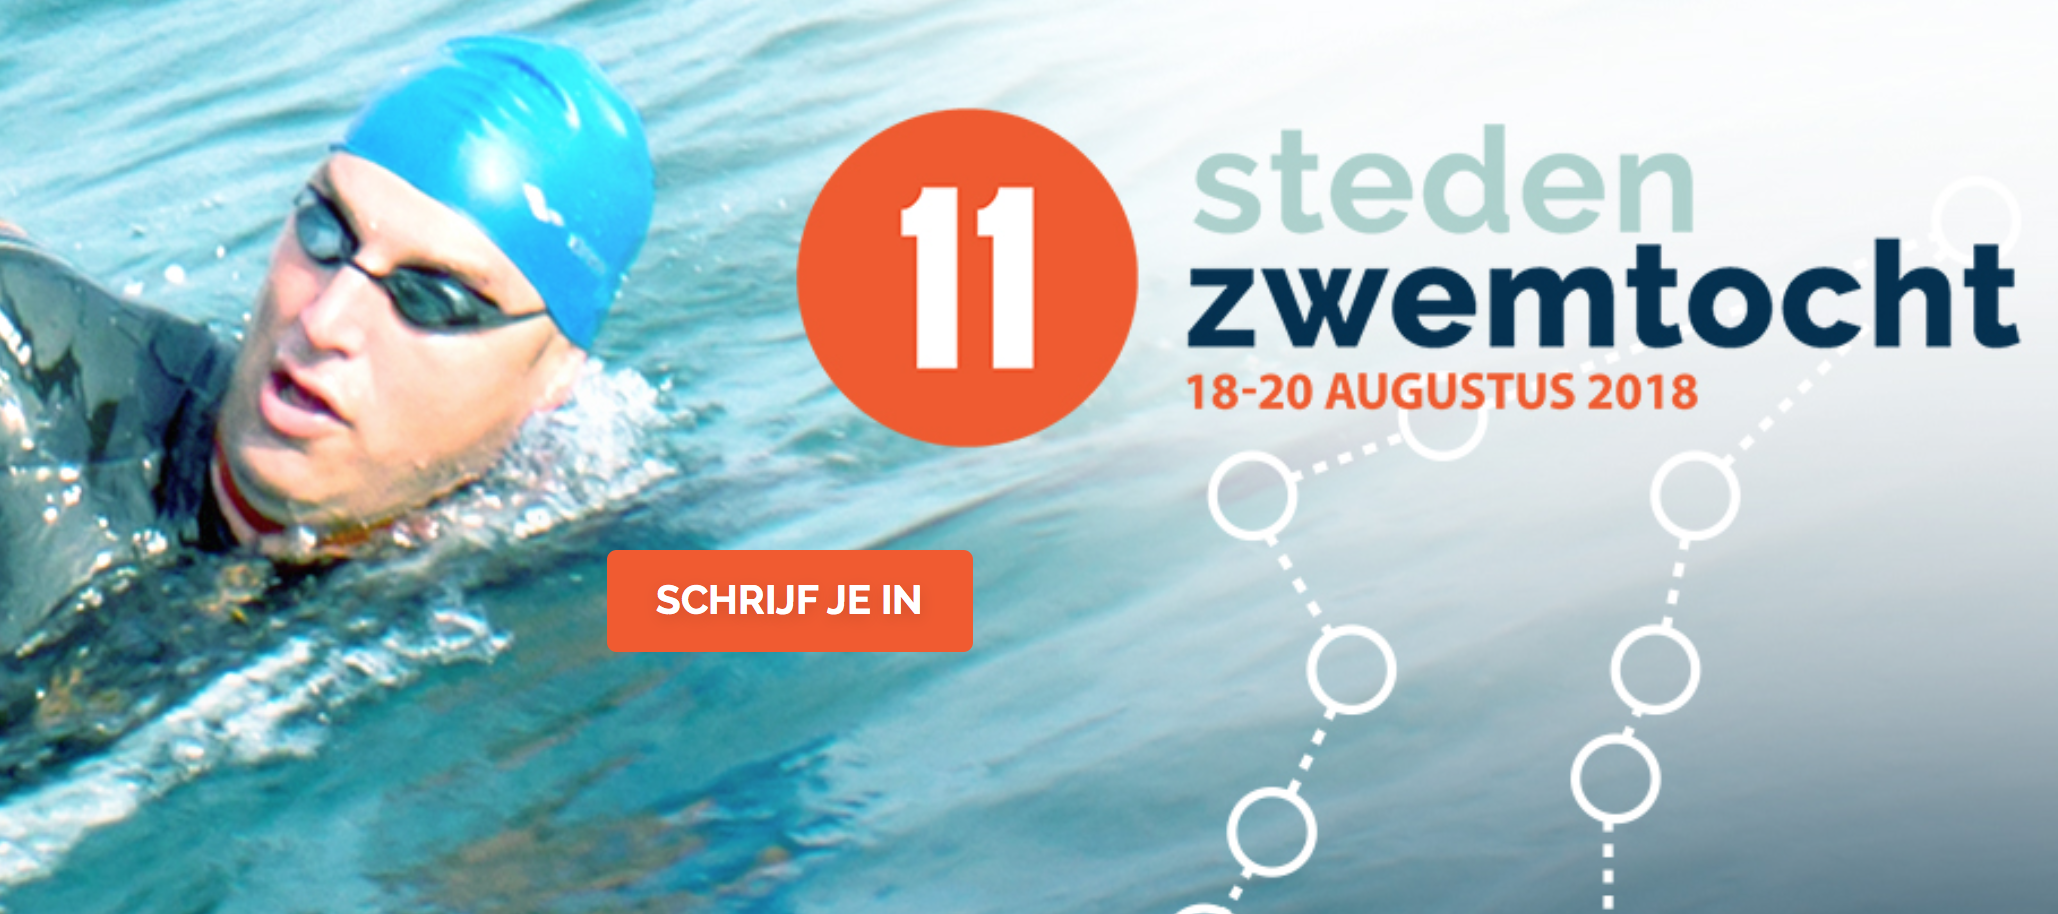 Maarten van der Weijden zwemt tegen kanker: zwem jij mee?